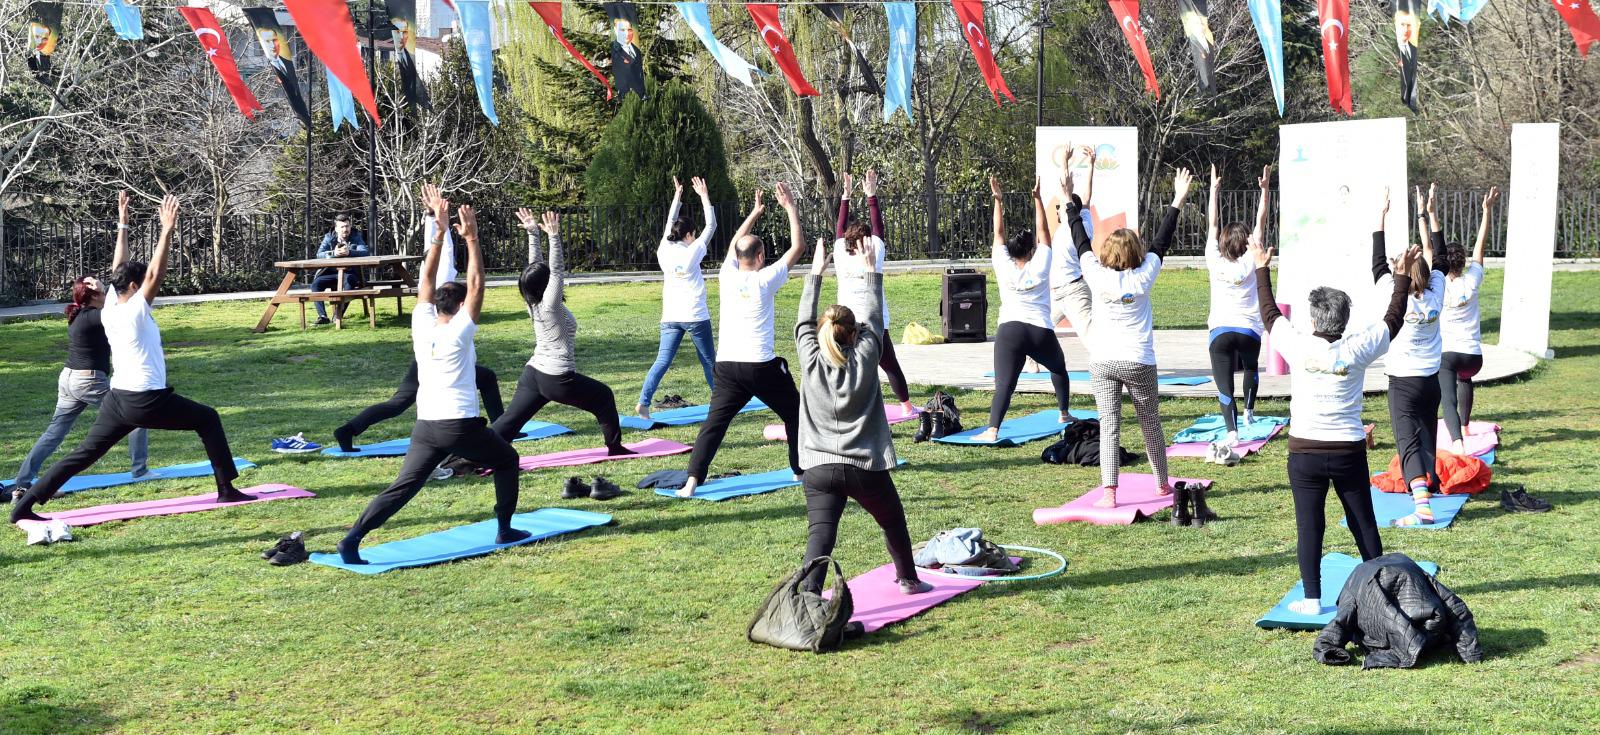 Uluslararası Mutluluk Günü’nde Beşiktaş’ta yoga ve meditasyon etkinliği düzenlendi